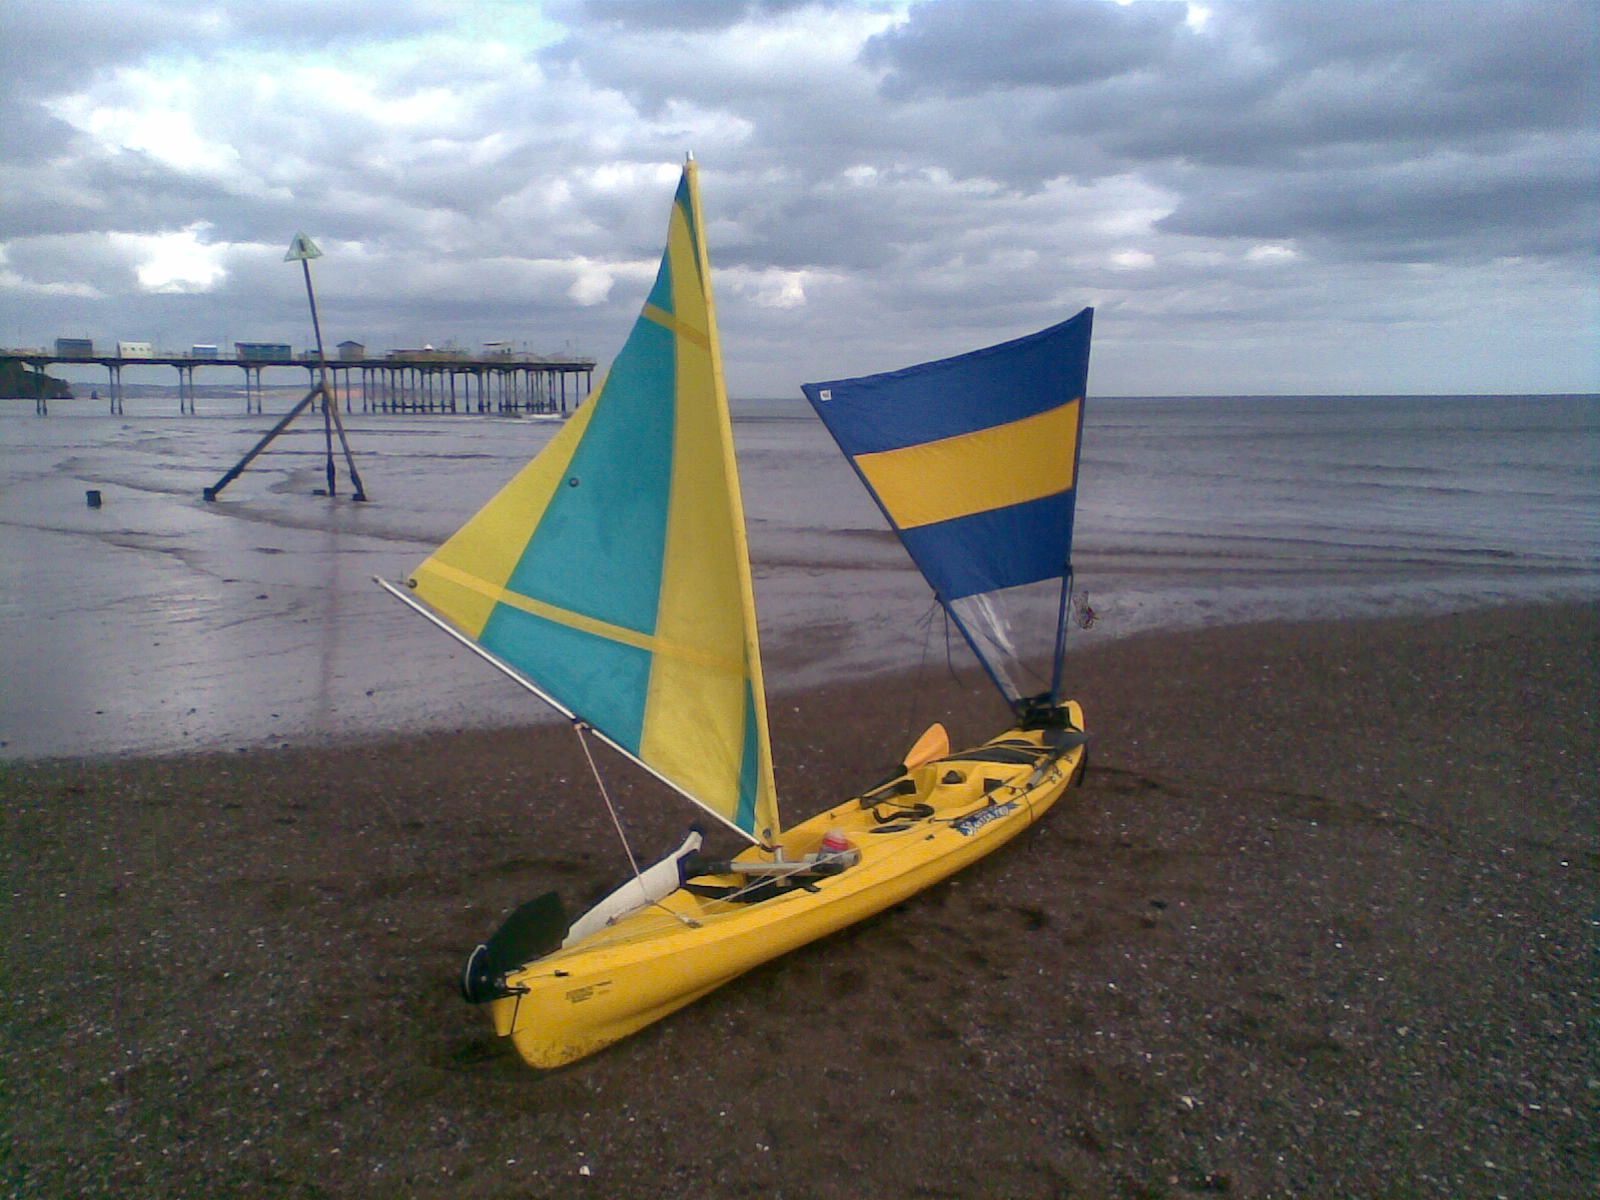 kayak sailing and boat building projects: kayak sailing